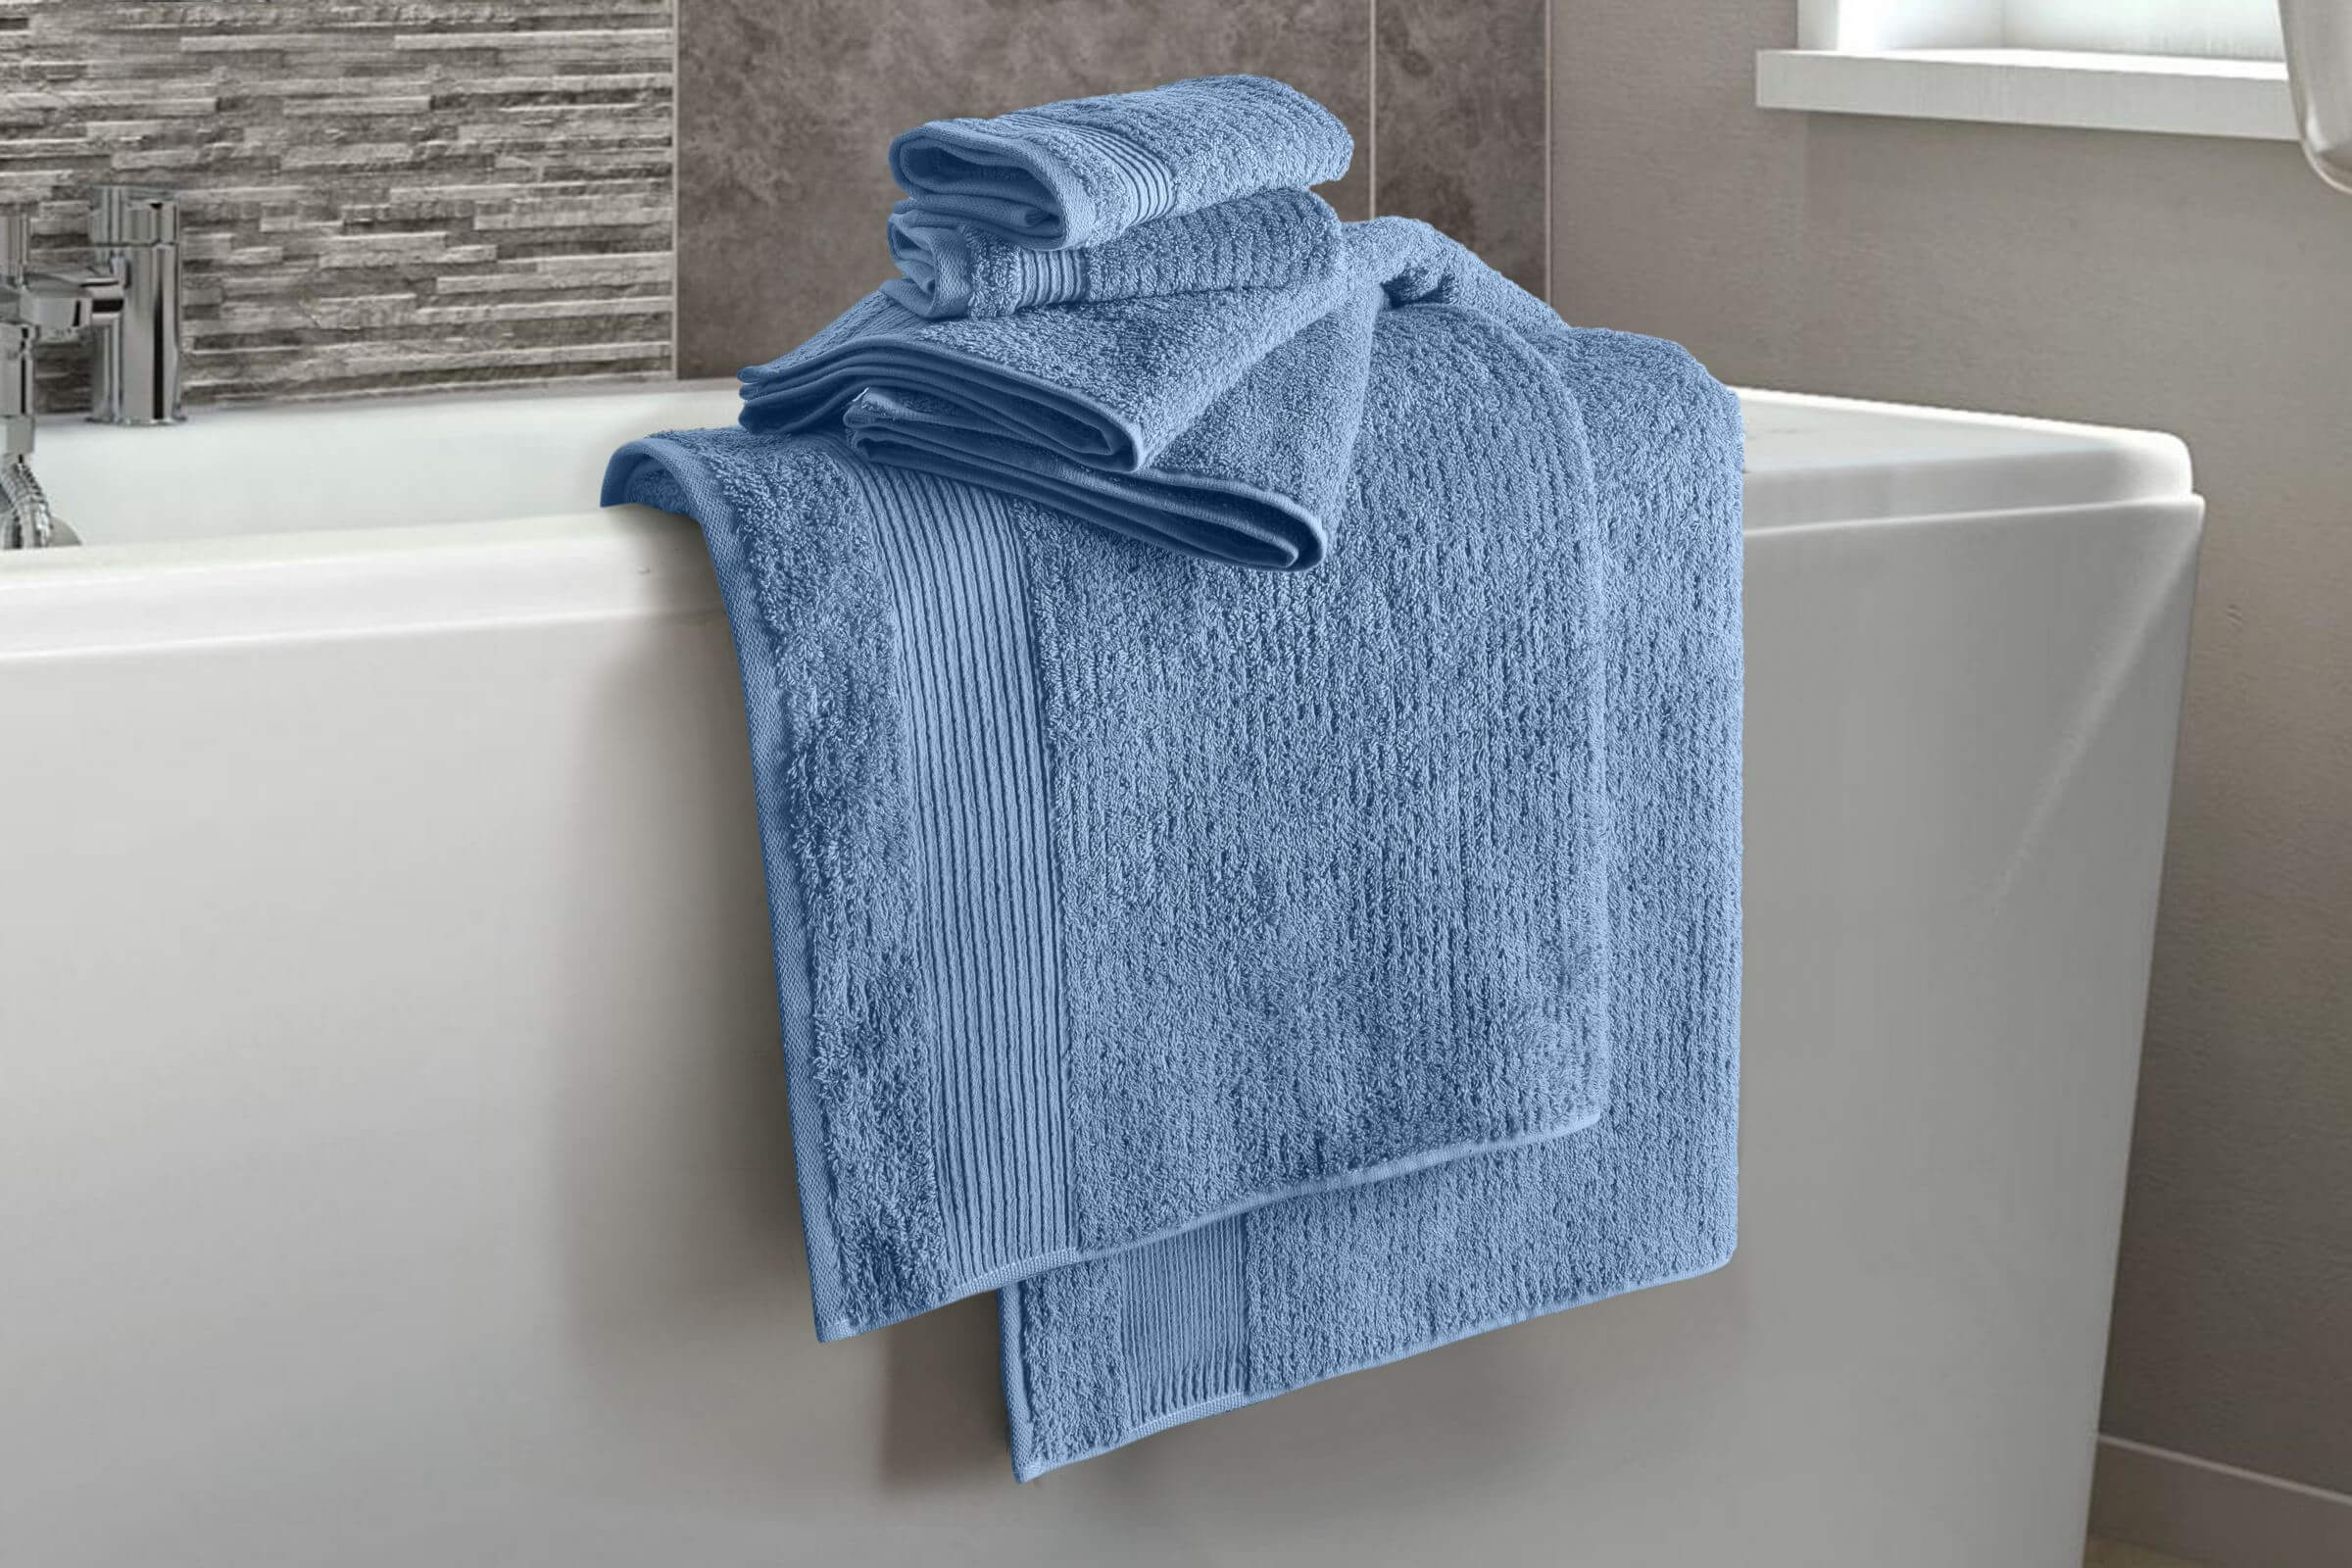 Chic Home Striped Hem Turkish Cotton 6 Piece Towel Set in Grey